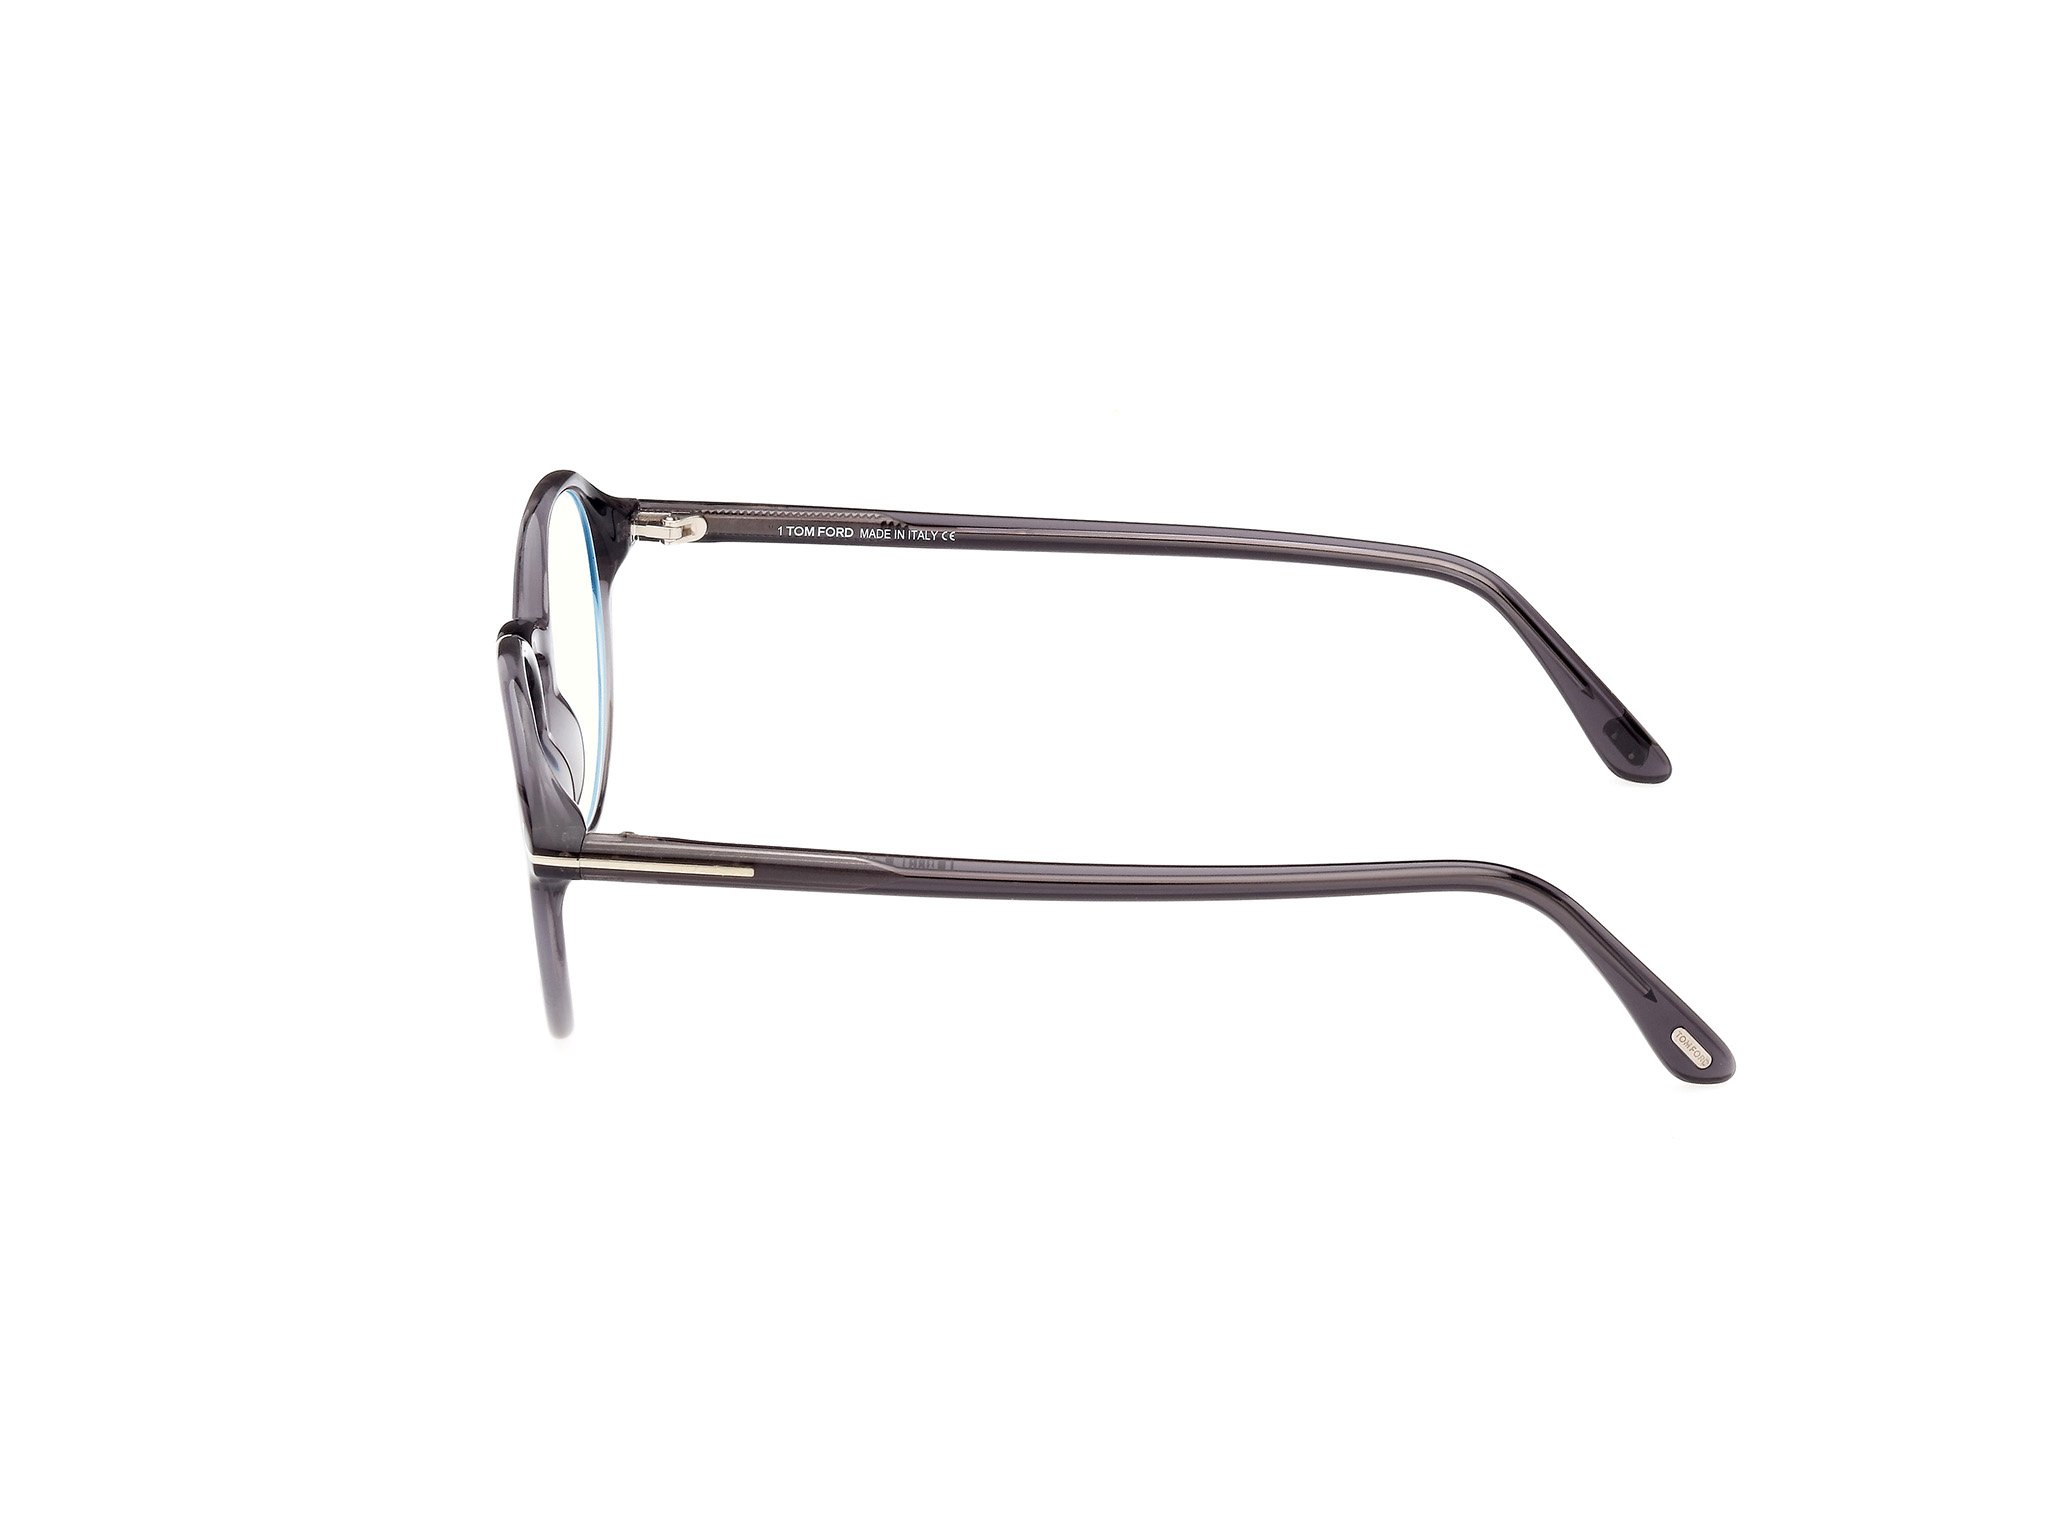 Das Bild zeigt die Korrektionsbrille FT5867-B 020 von der Marke Tom Ford in grau.